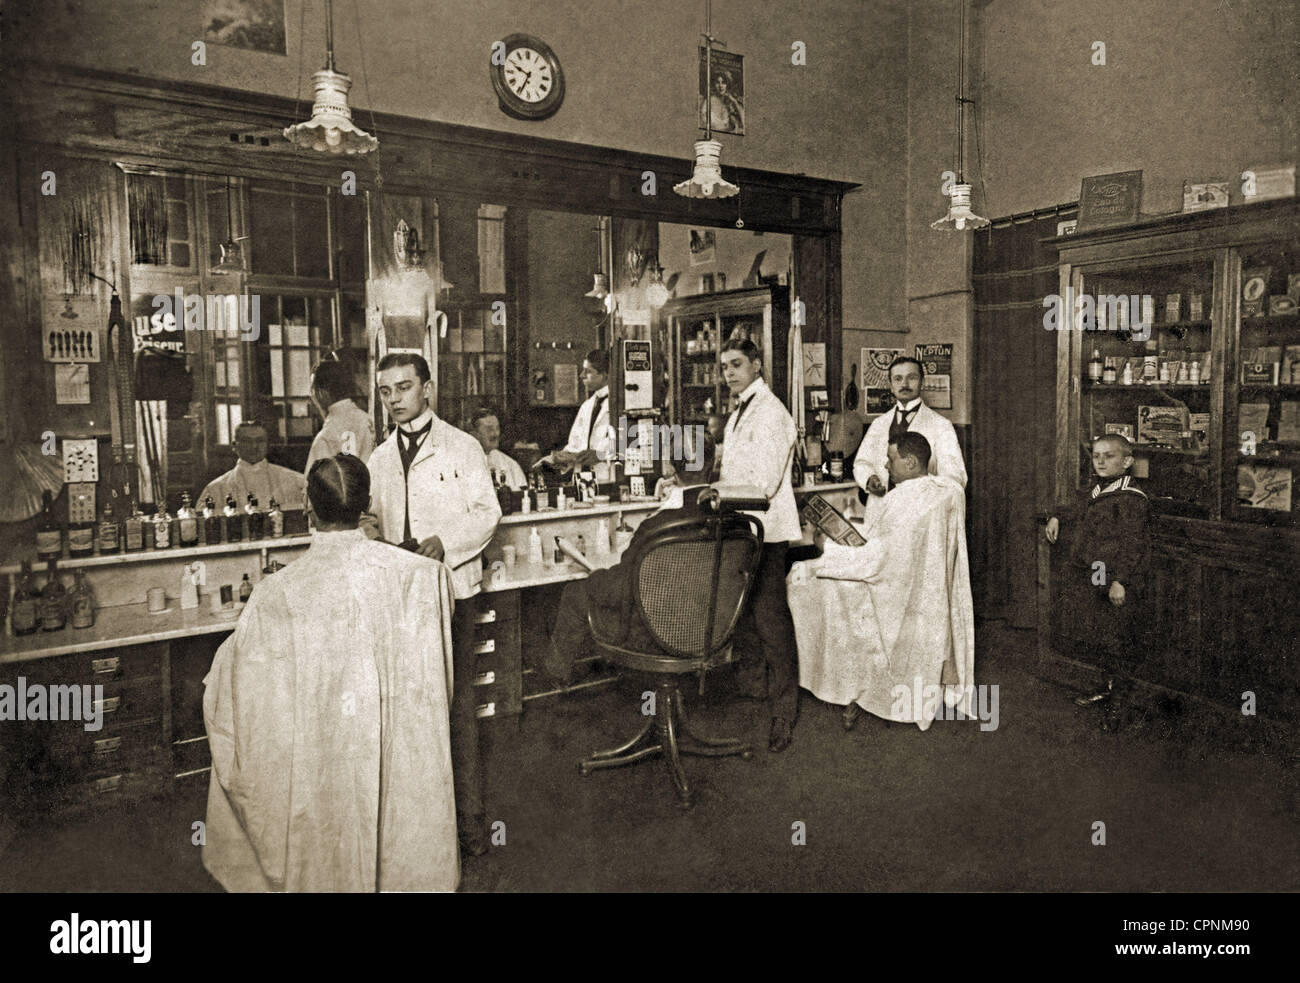 Cosmétiques, gents coiffeur, Allemagne, Wroclaw, vers 1910, droits additionnels-Clearences-non disponible Banque D'Images